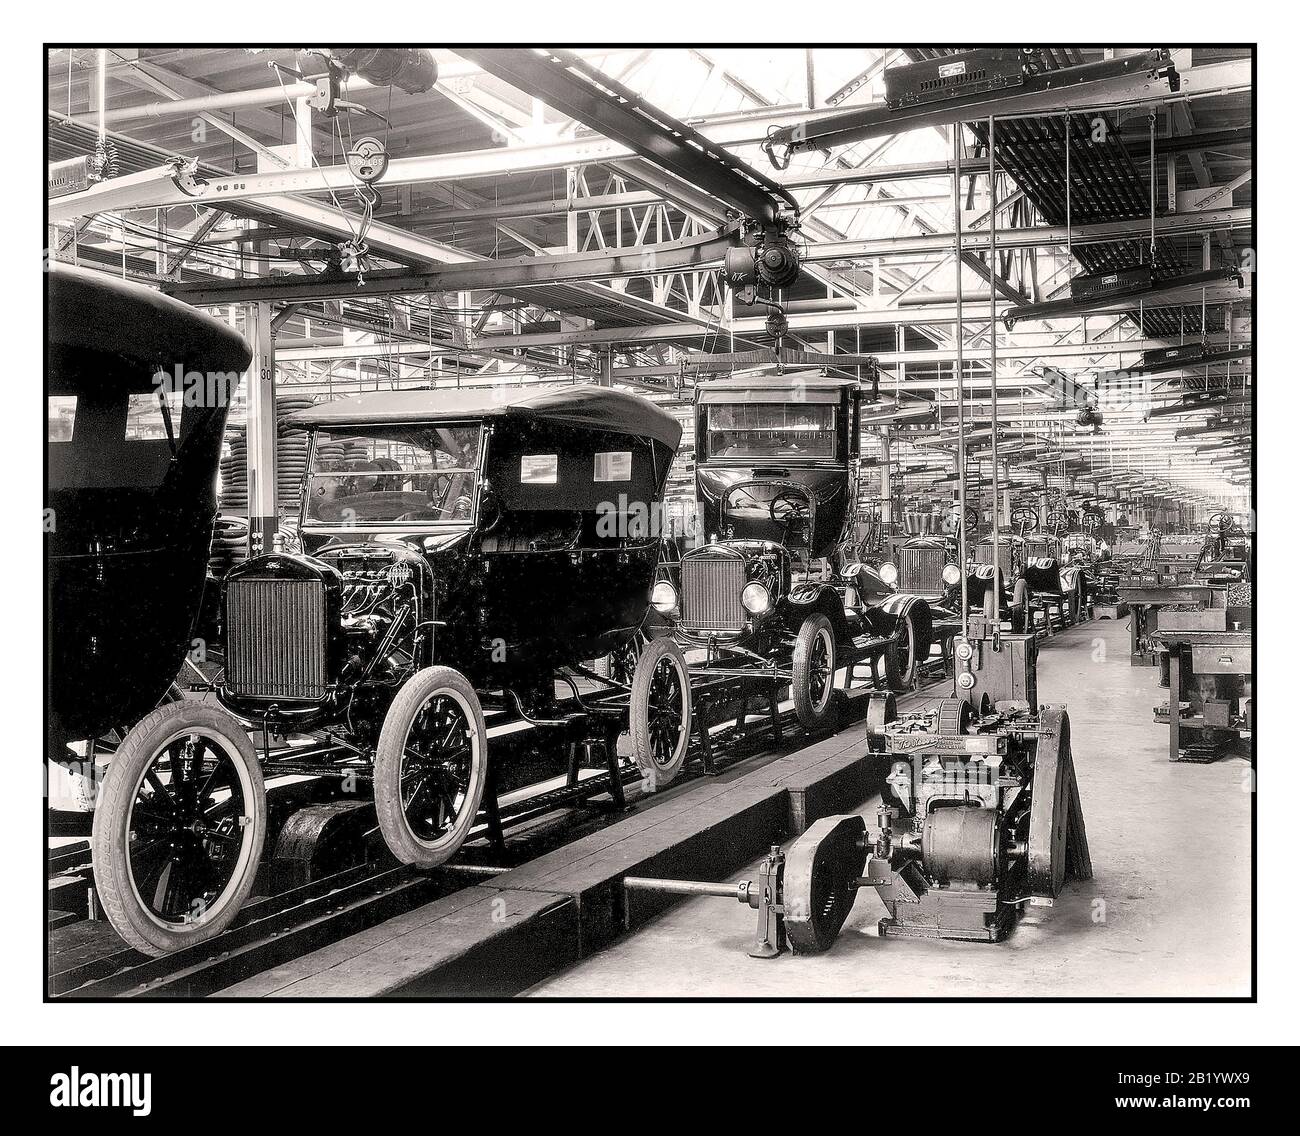 Archives 1900 Ford Company modèle T de la voiture à moteur la création de la ligne de montage en mouvement par Henry Ford à son usine de Highland Park, introduite le 1er décembre 1913, a révolutionné l’industrie automobile et le concept de fabrication dans le monde entier. La production pure du modèle T a considérablement augmenté. Le temps de production d'une seule voiture est passé de plus de 12 heures à seulement 93 minutes en raison de l'introduction de la chaîne de montage. Le taux de production de Ford en 1914 de 308 162 a éclipsé le nombre de voitures produites par tous les autres constructeurs automobiles réunis. Detroit Michigan États-Unis Banque D'Images